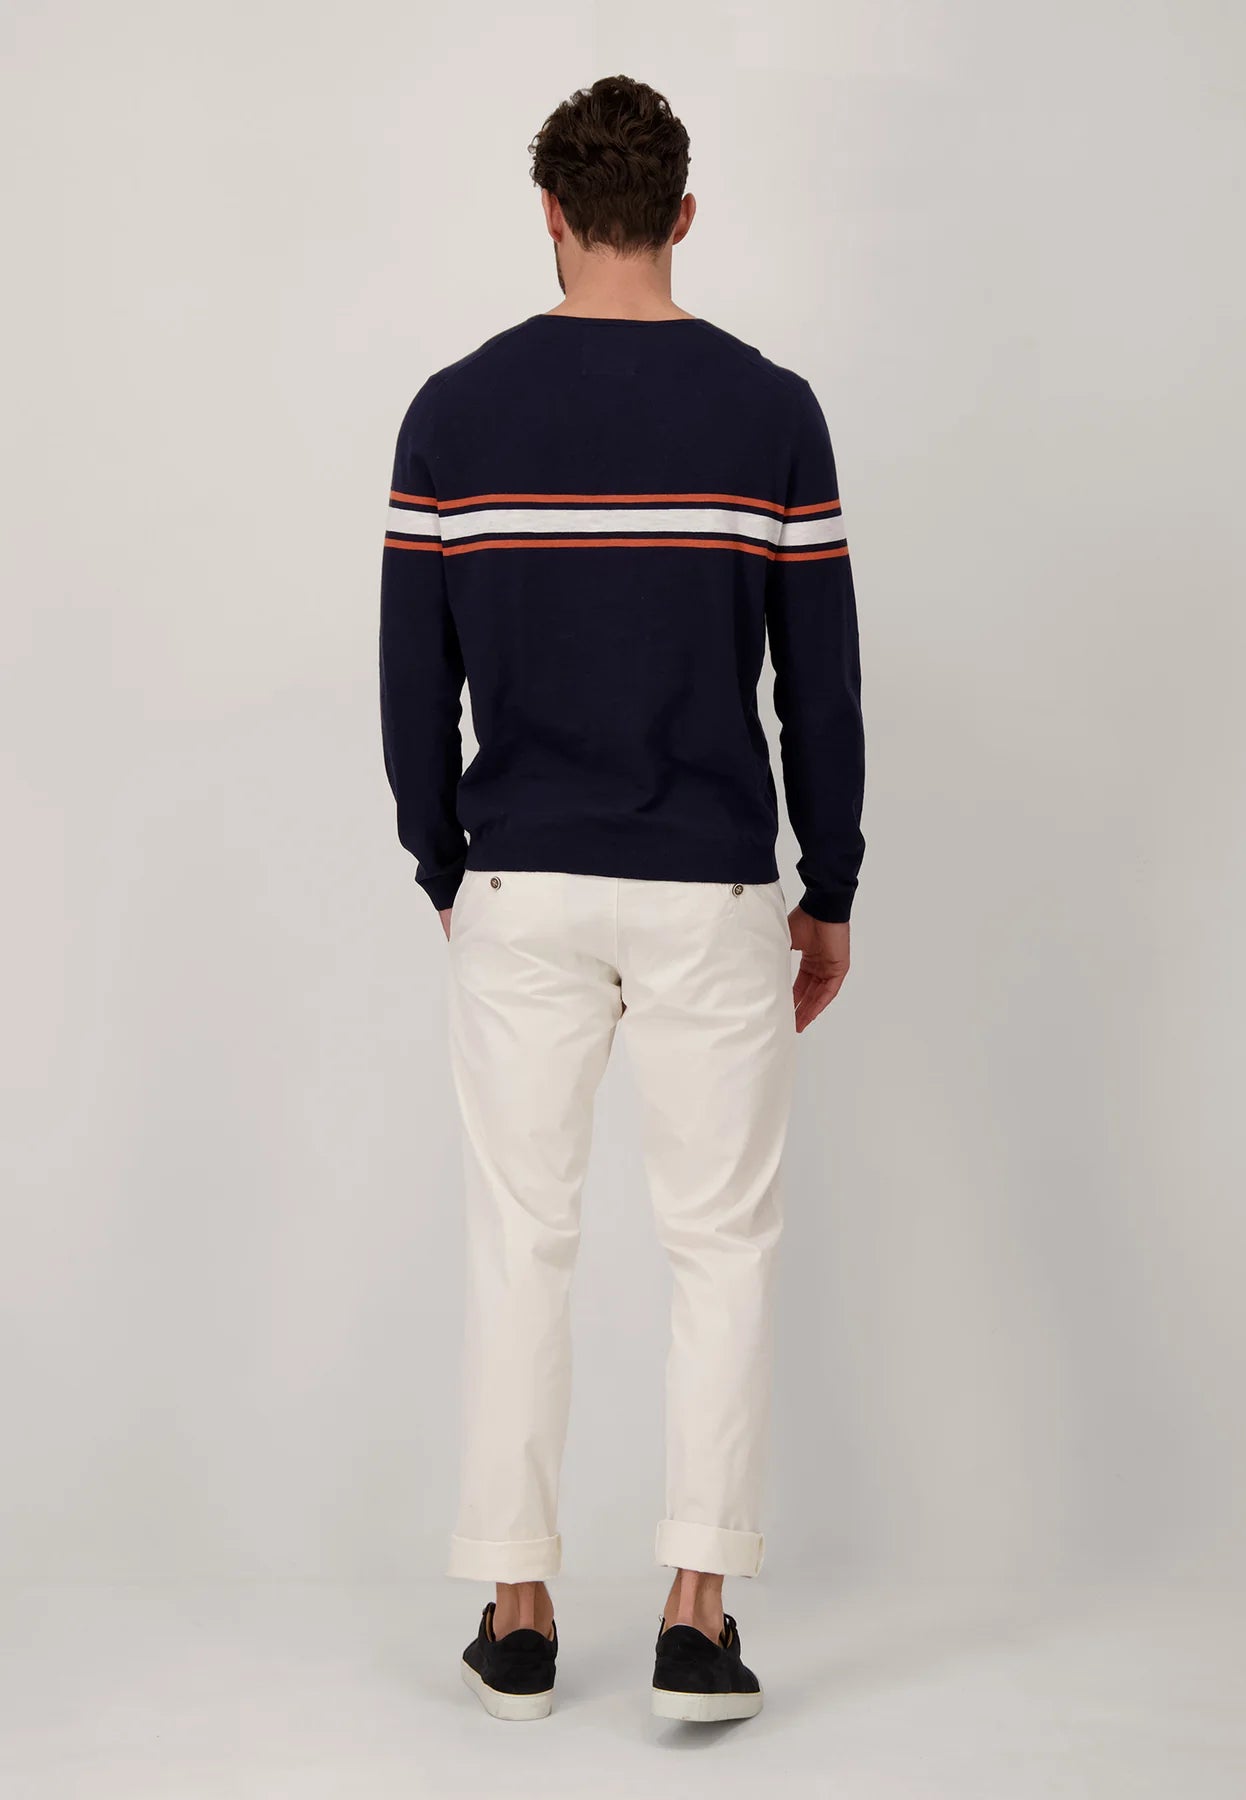 Fynch Hatton Round Neck Sweater - Navy and Orange